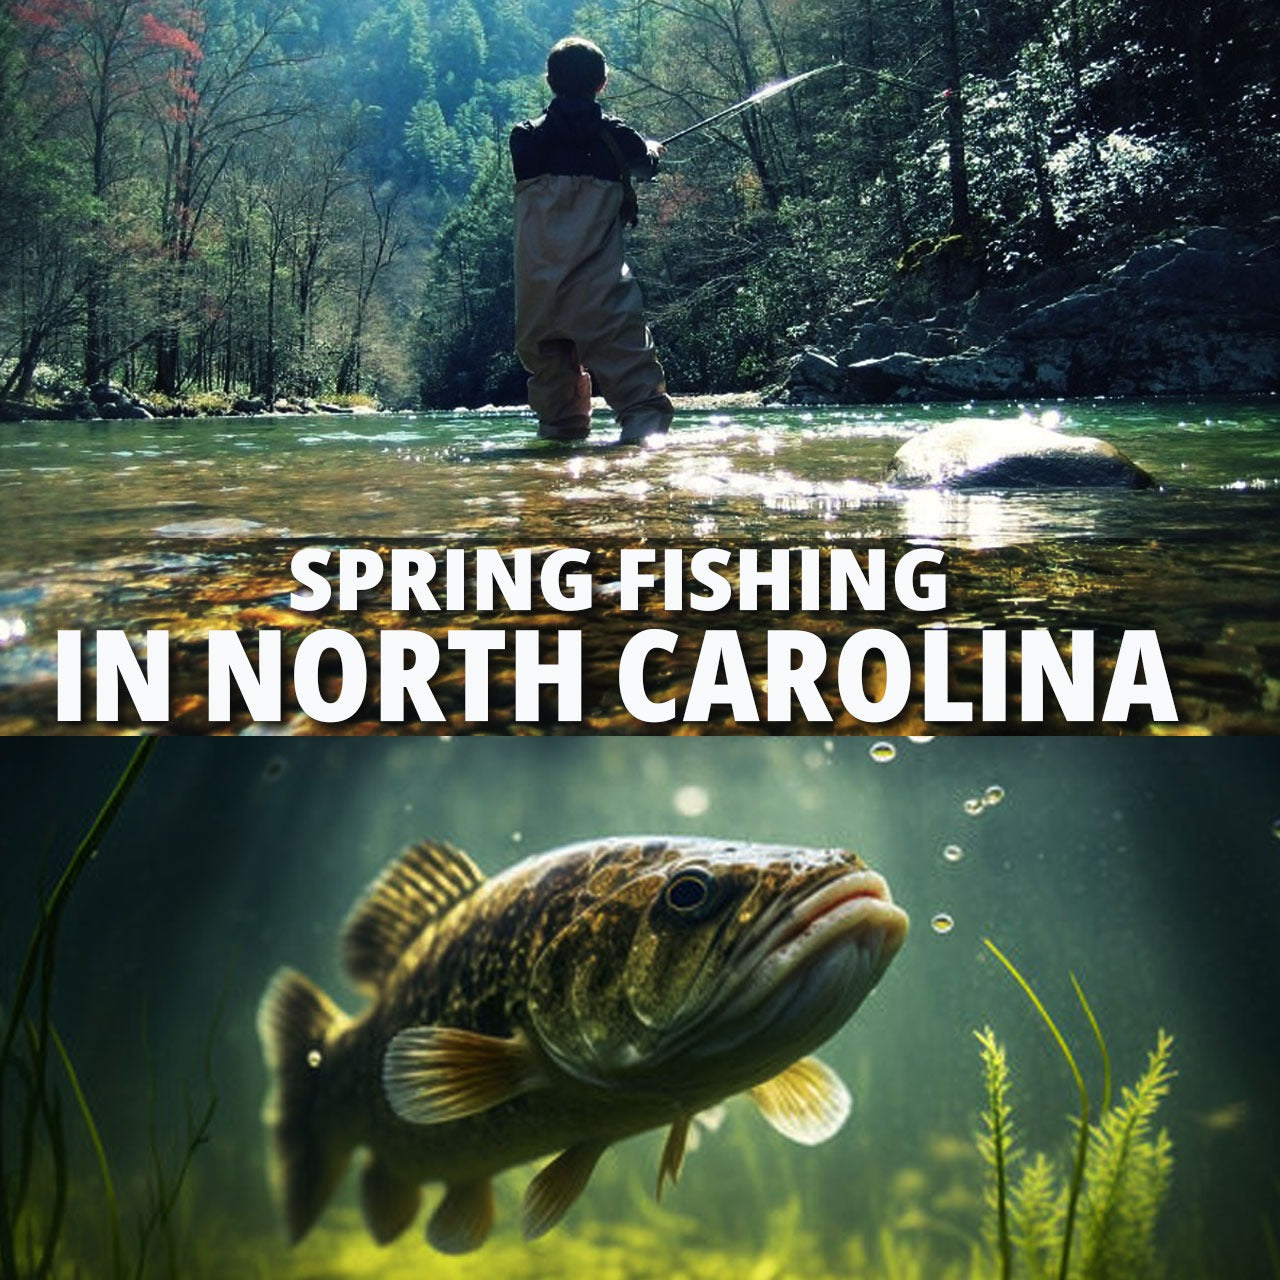 Spring Fishing in North Carolina - Fishing Nice